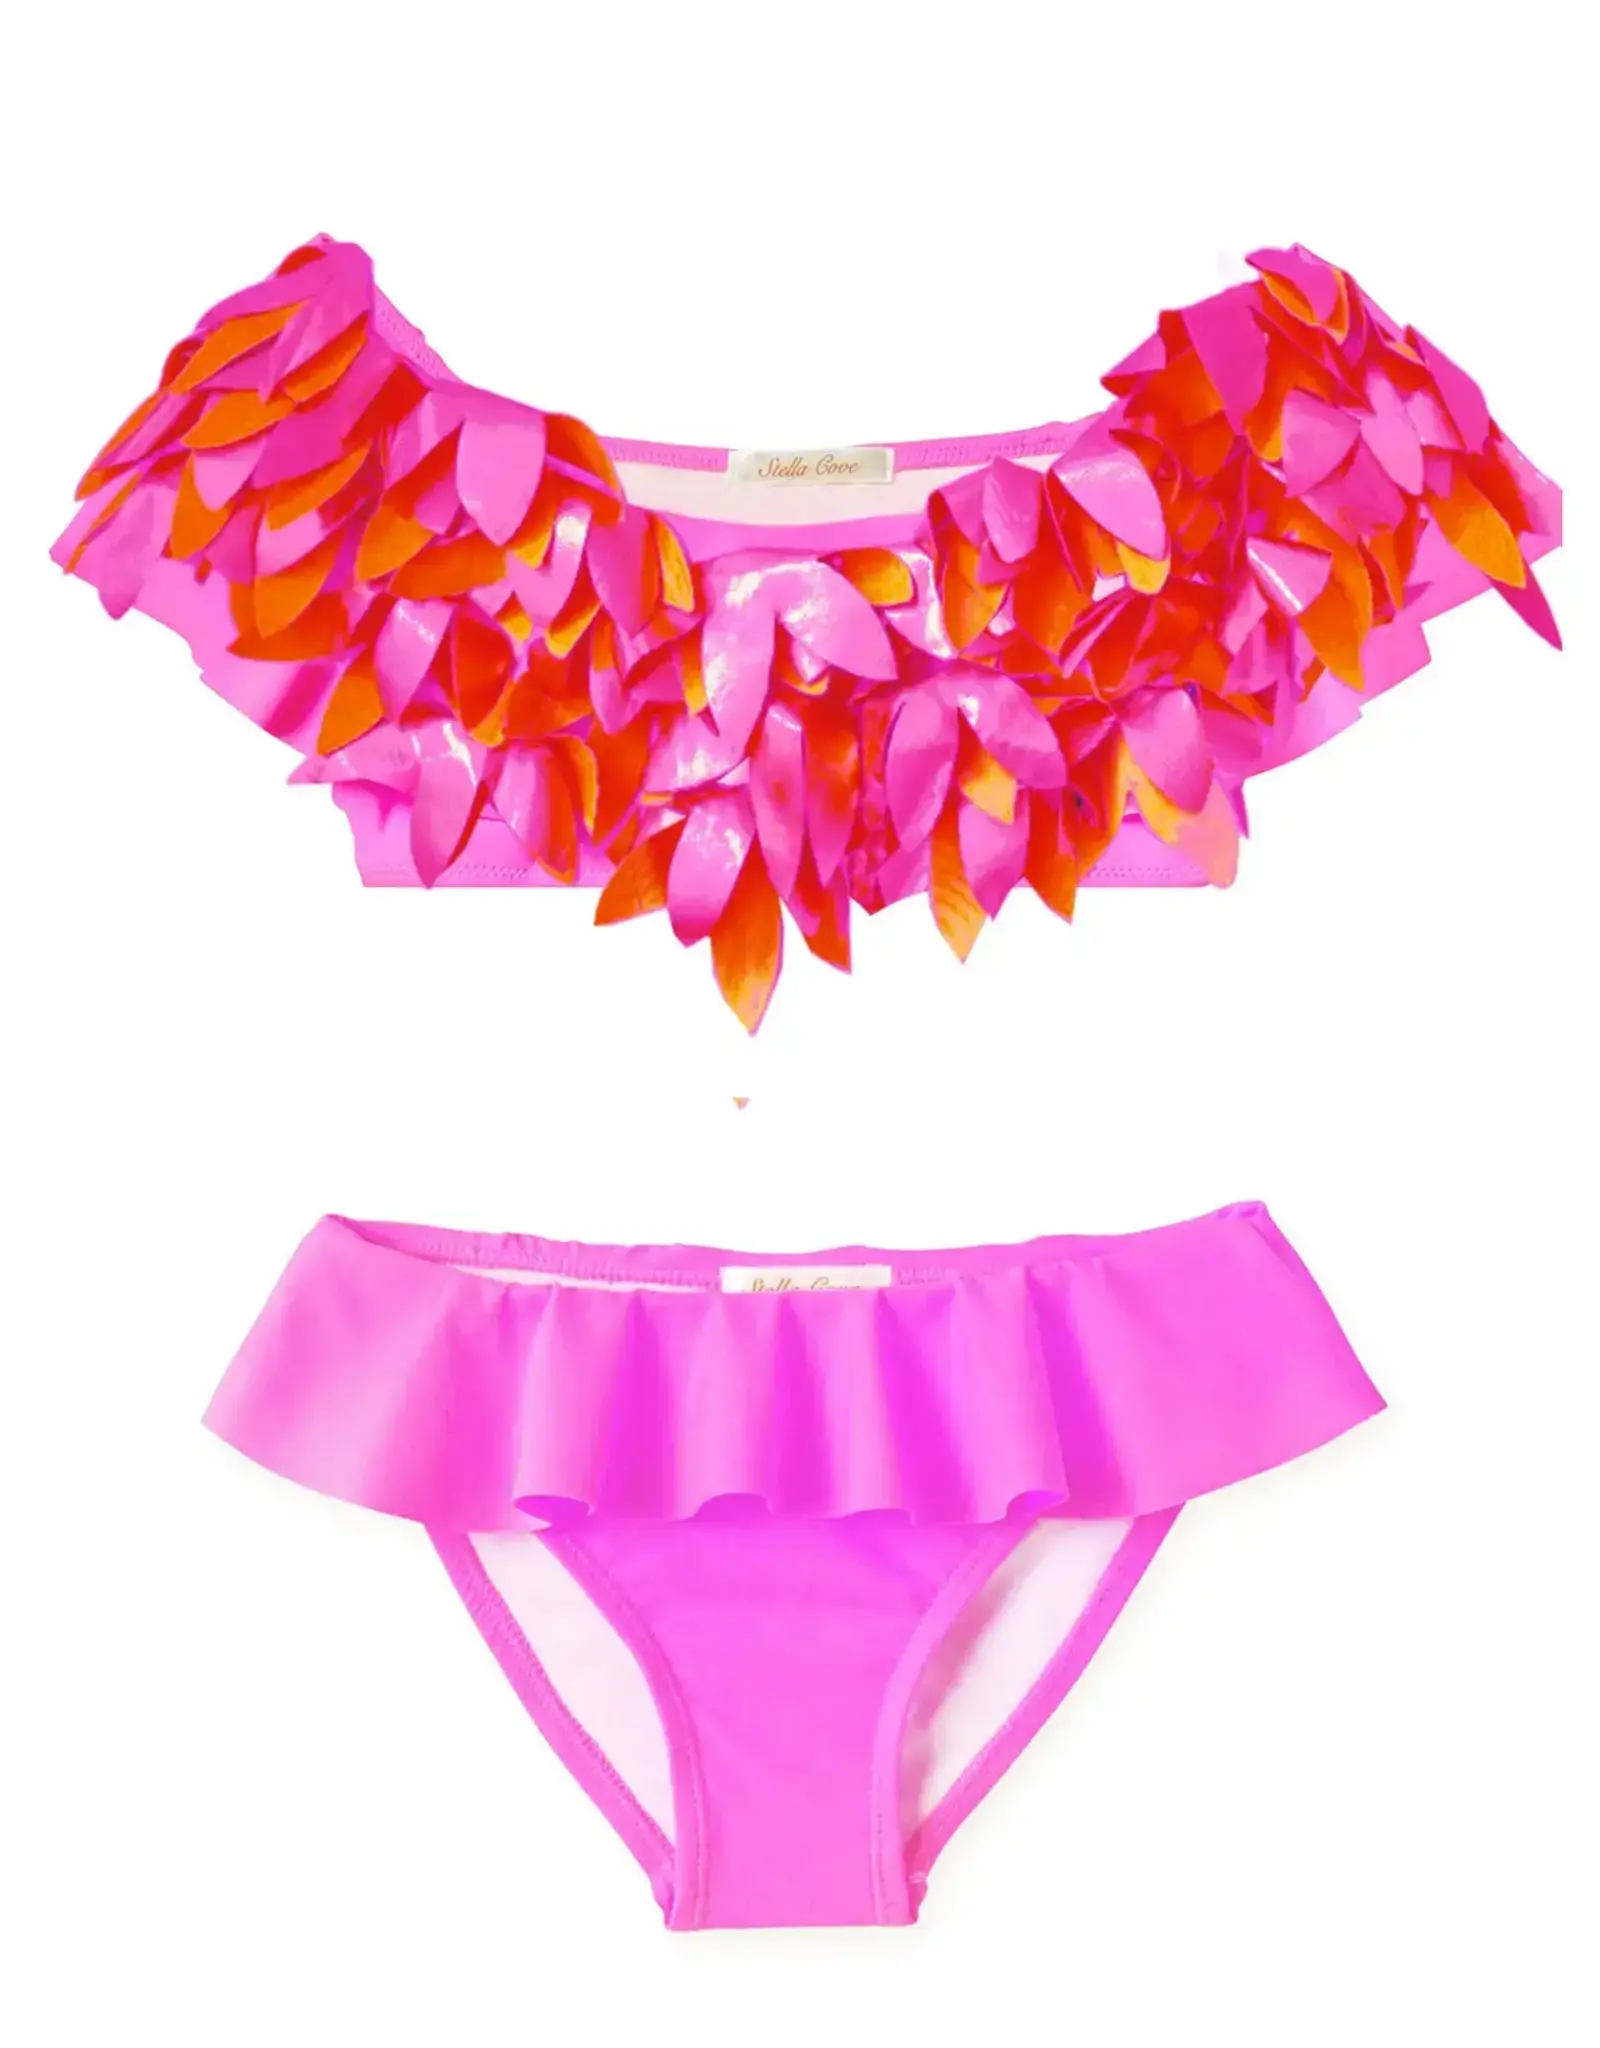 Neon Pink Ruffle Bikini